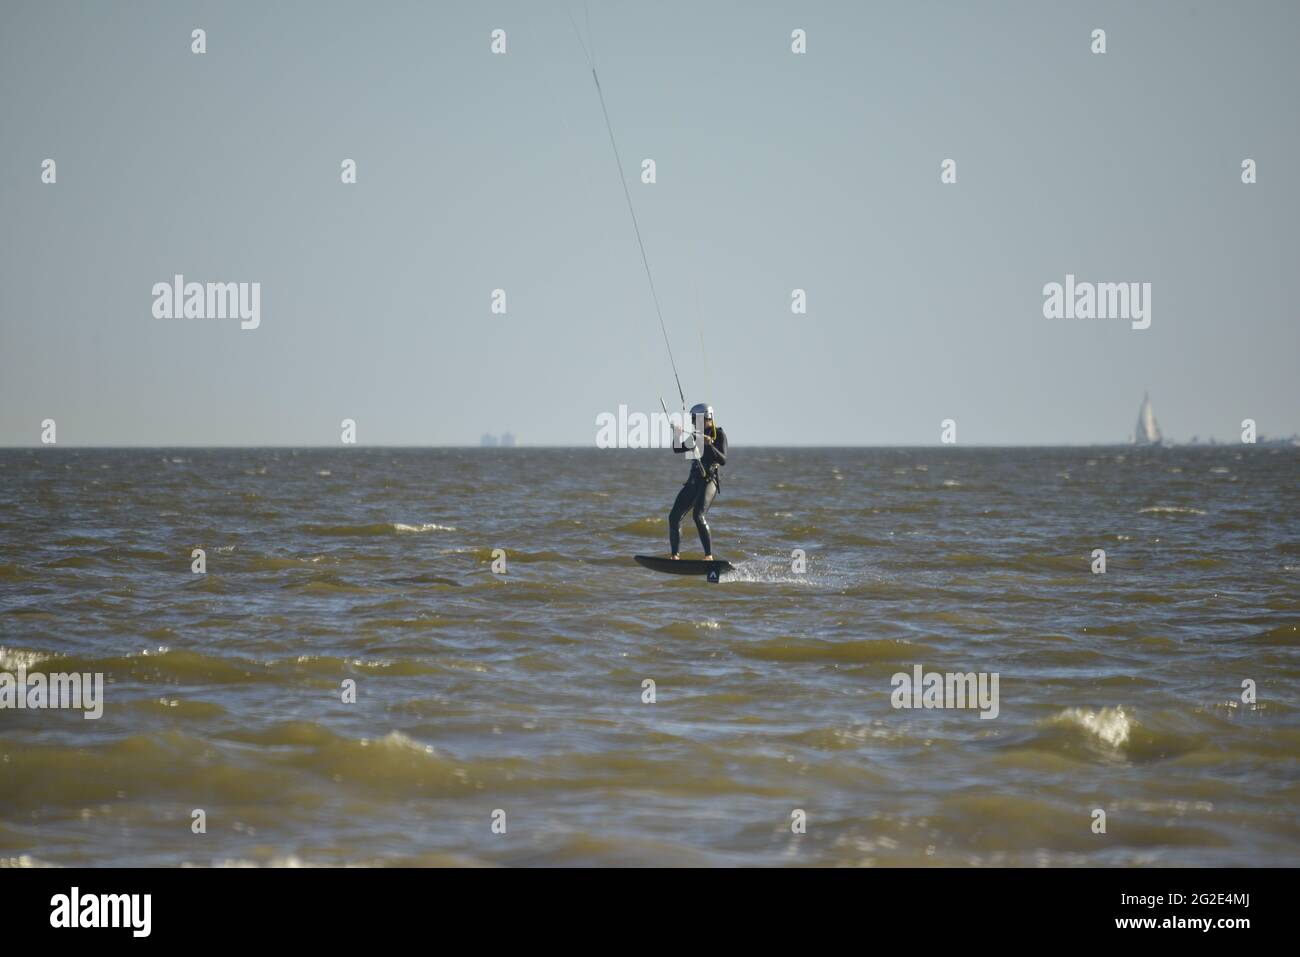 Kite surfing or kitebording in the ocean surf Stock Photo